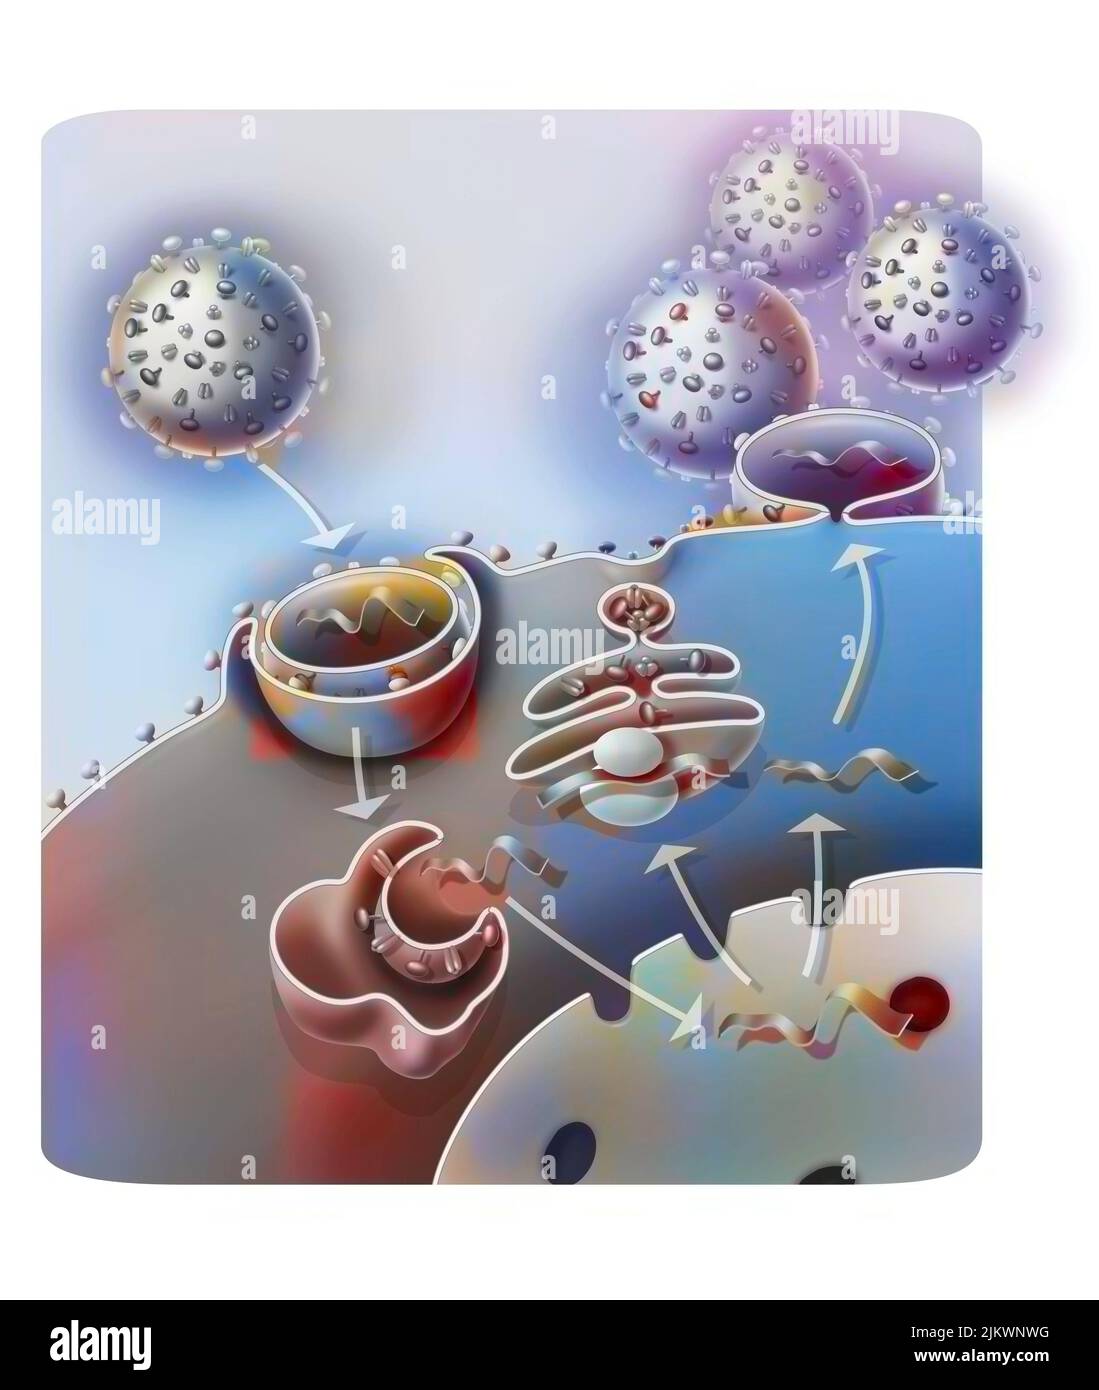 Eindringen und Replikation des H1N1-Virus durch eine Wirtszelle. Stockfoto